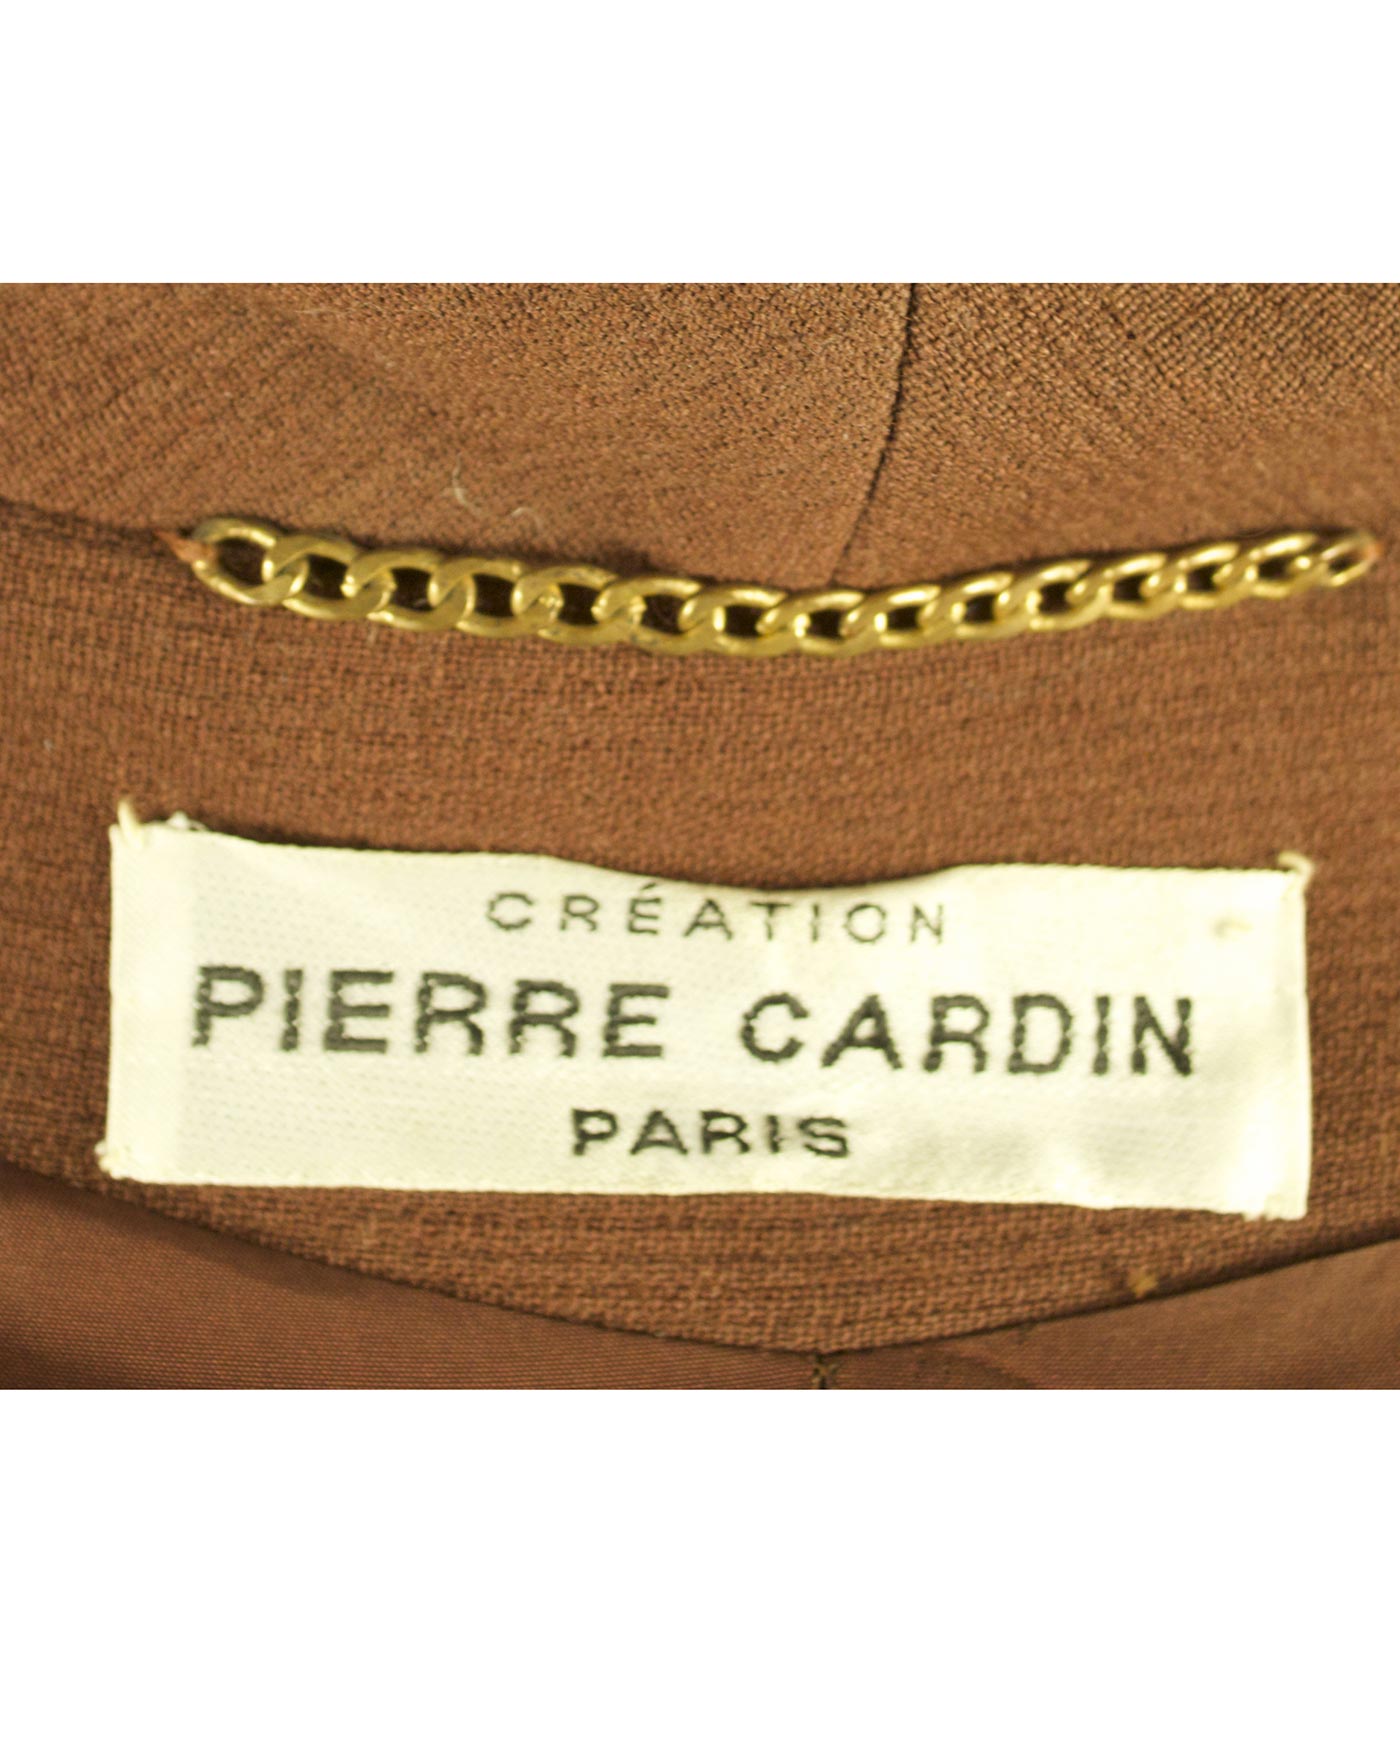 PIERRE CARDIN pure wool coat 60s